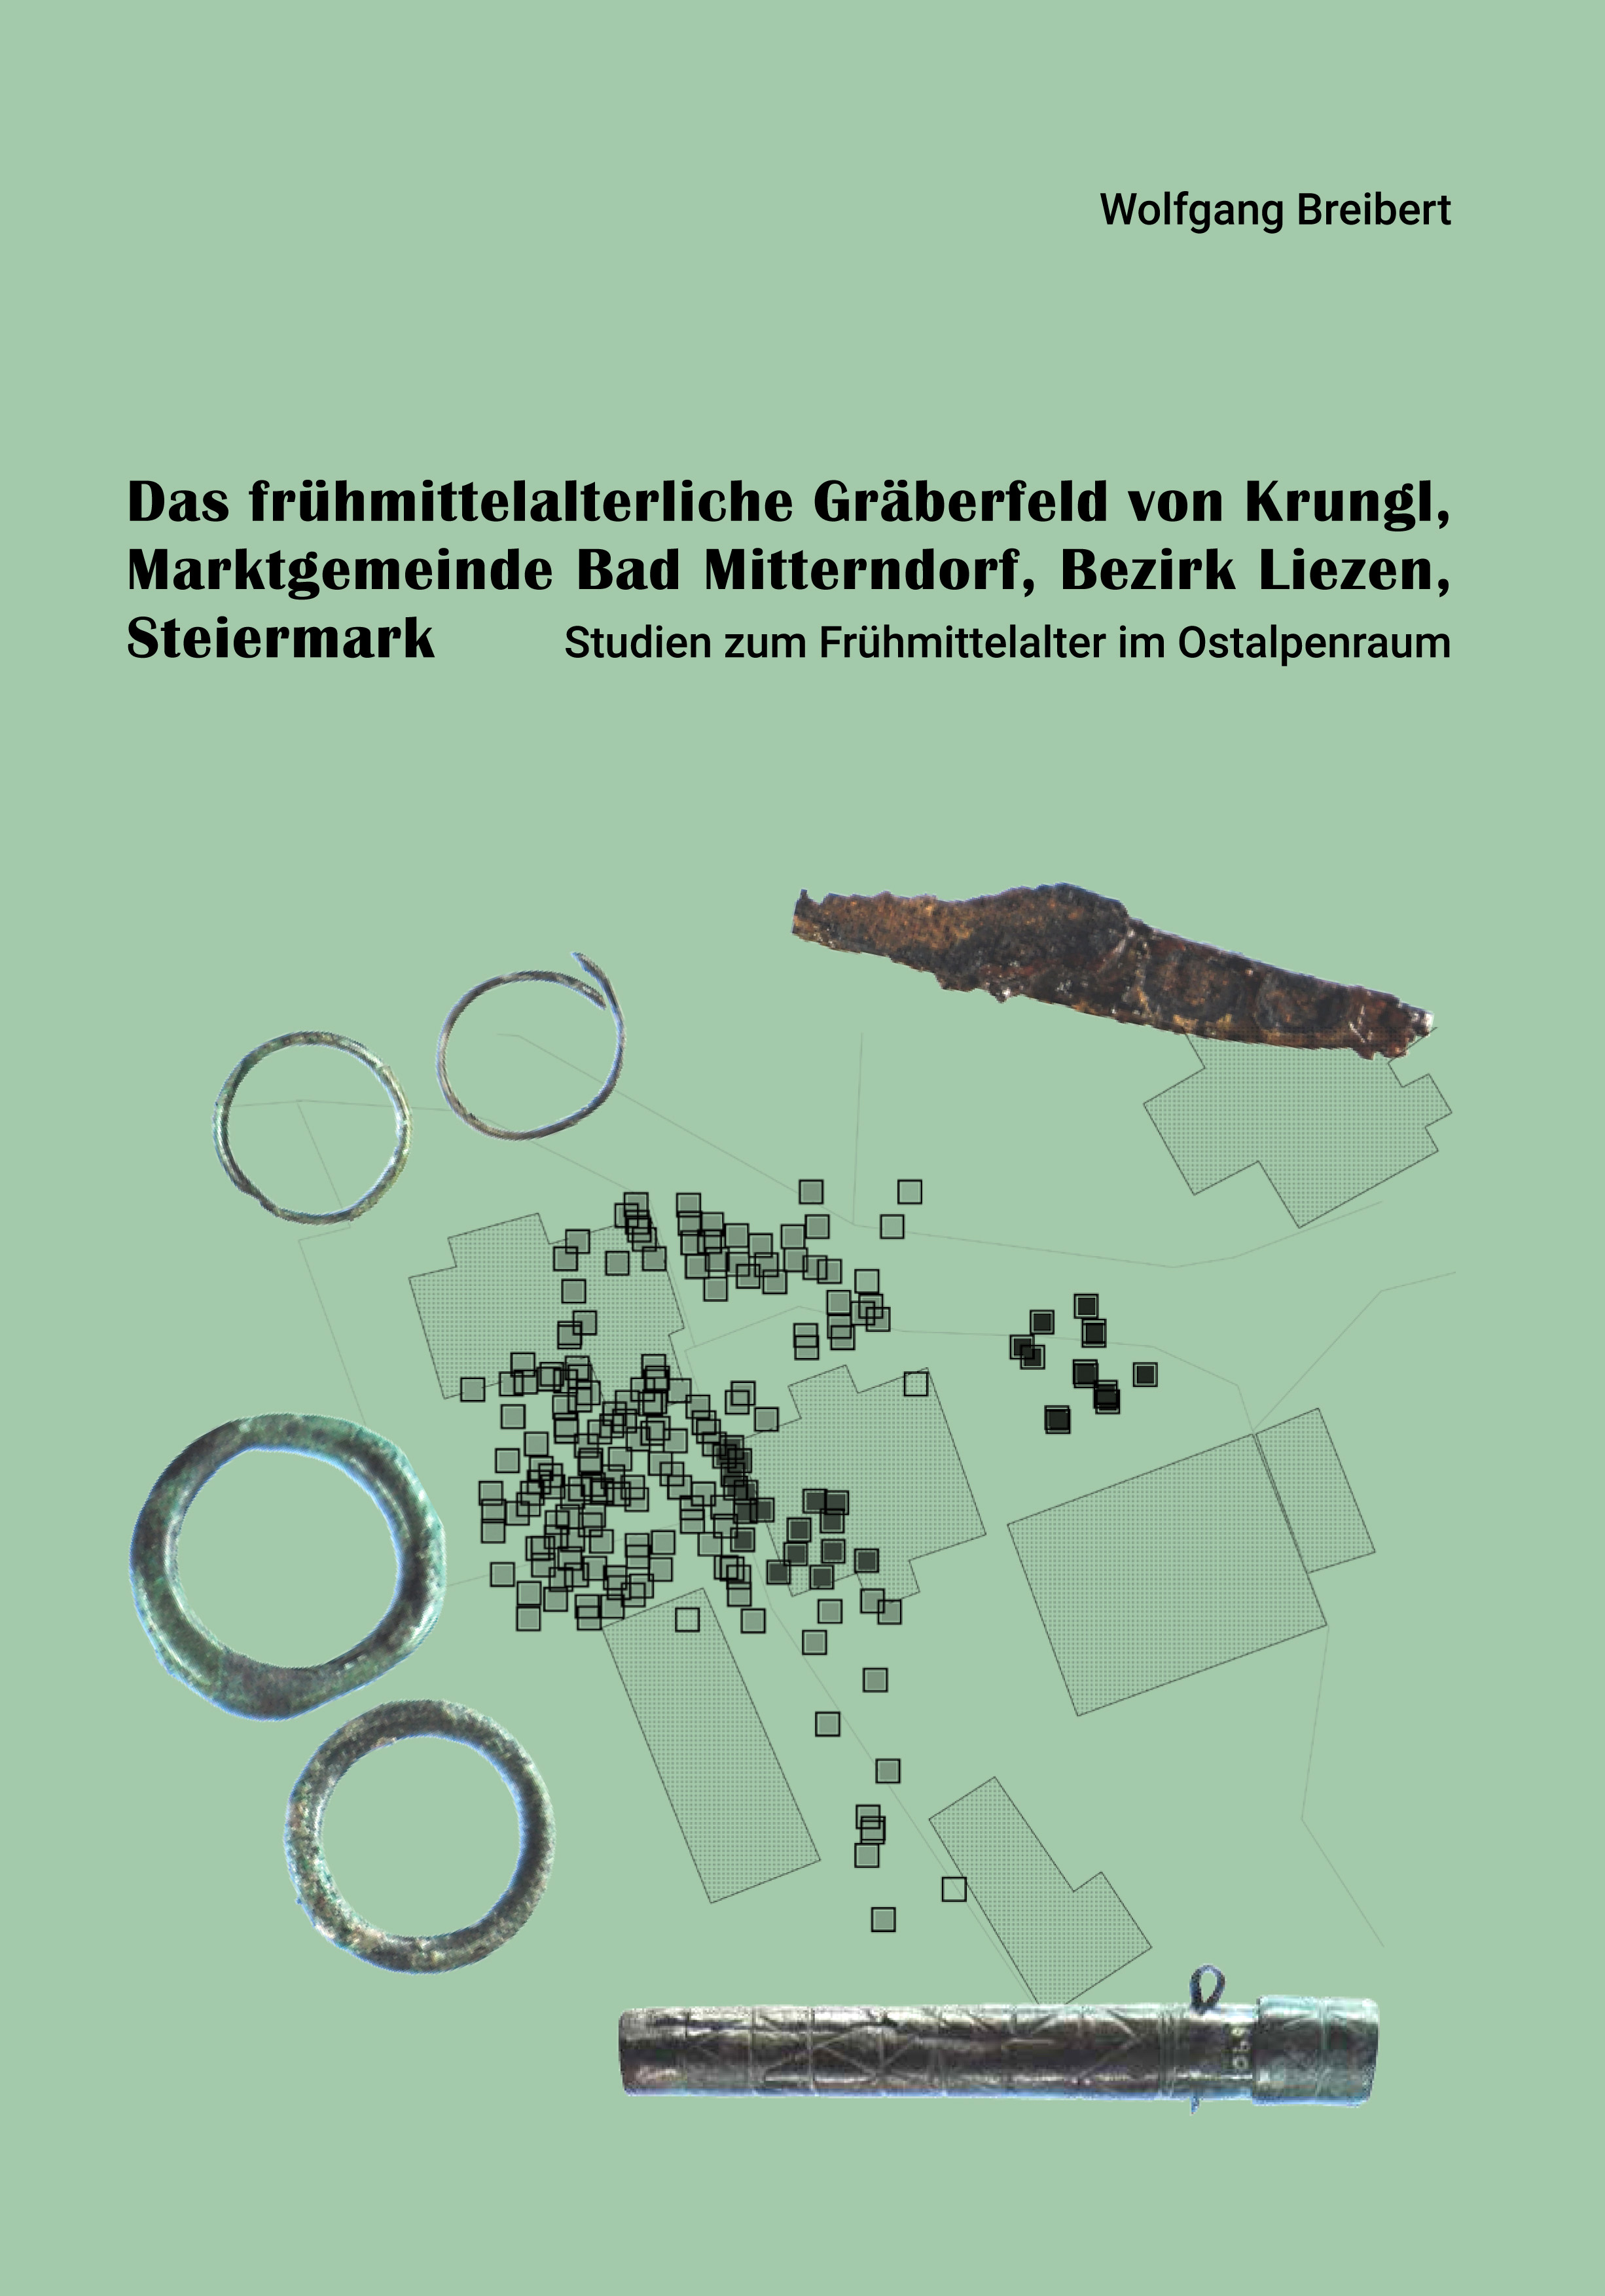 Cover Publikation mit grafischer Darstellung einer frühmittelalterlichen Siedlung und metallische Grabungsfunde